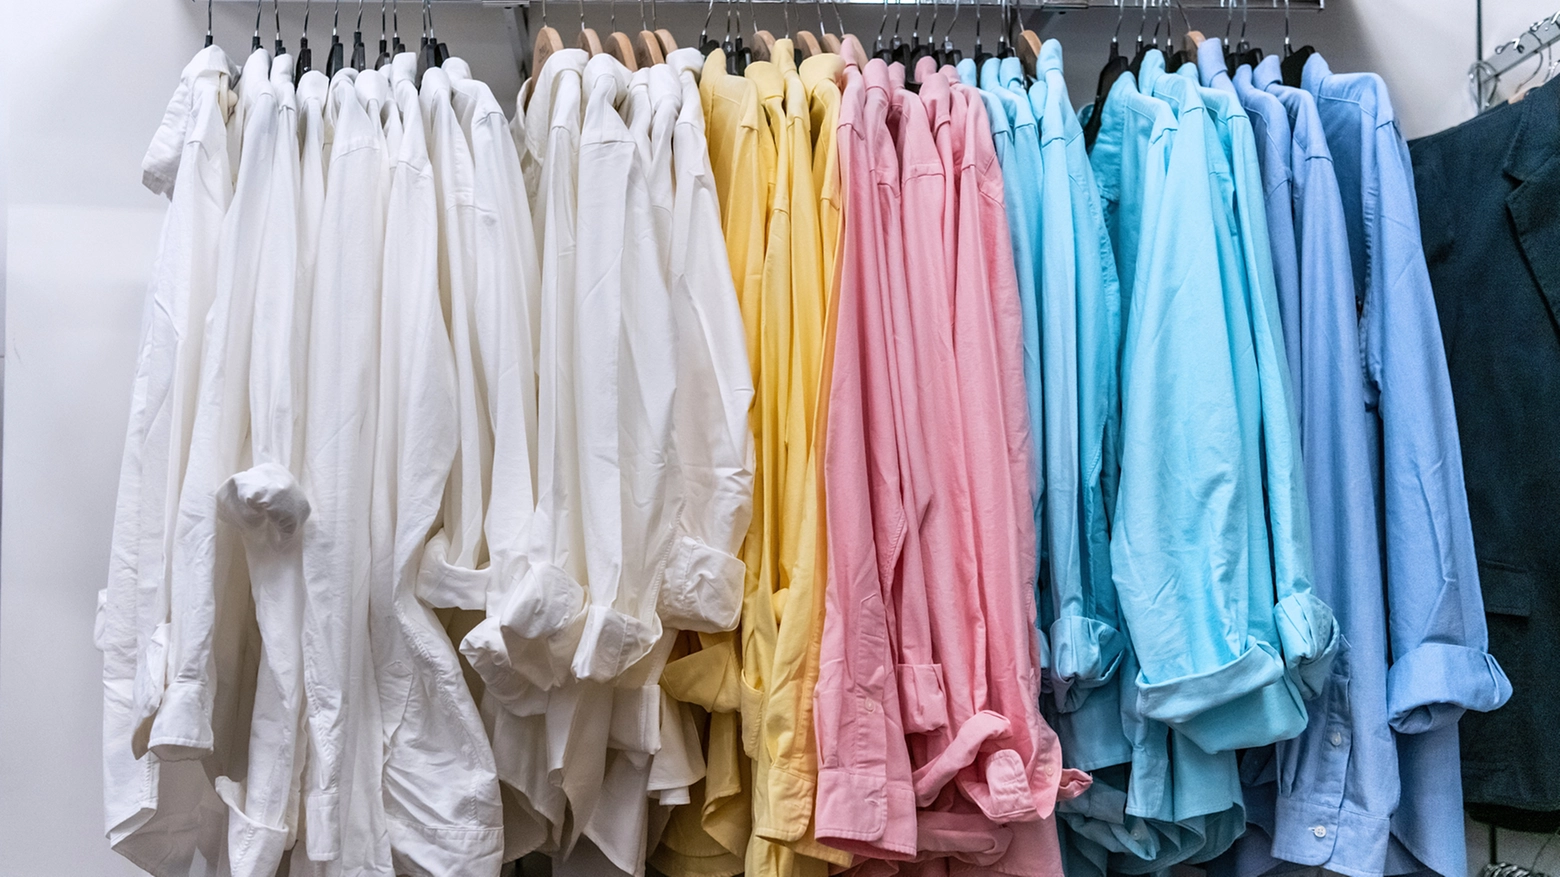 Crediti iStock - Le caratteristiche della camicia di lino